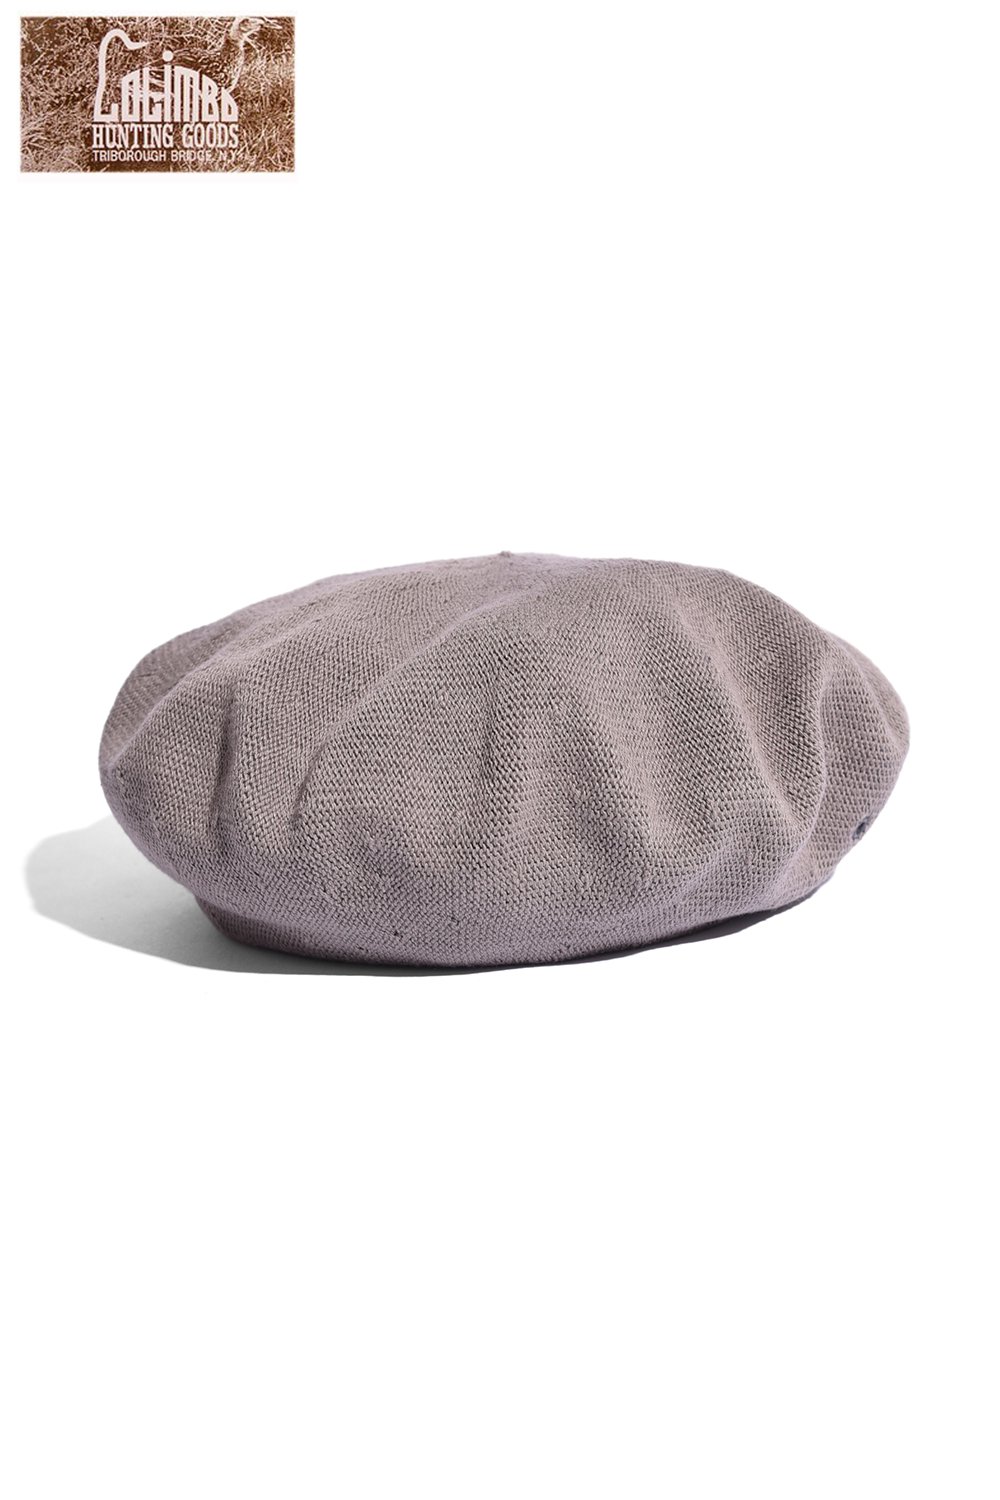 COLIMBO(コリンボ) ベレー帽 BERET ZW-0602 通販正規取扱 | ハーレムストア公式通販サイト